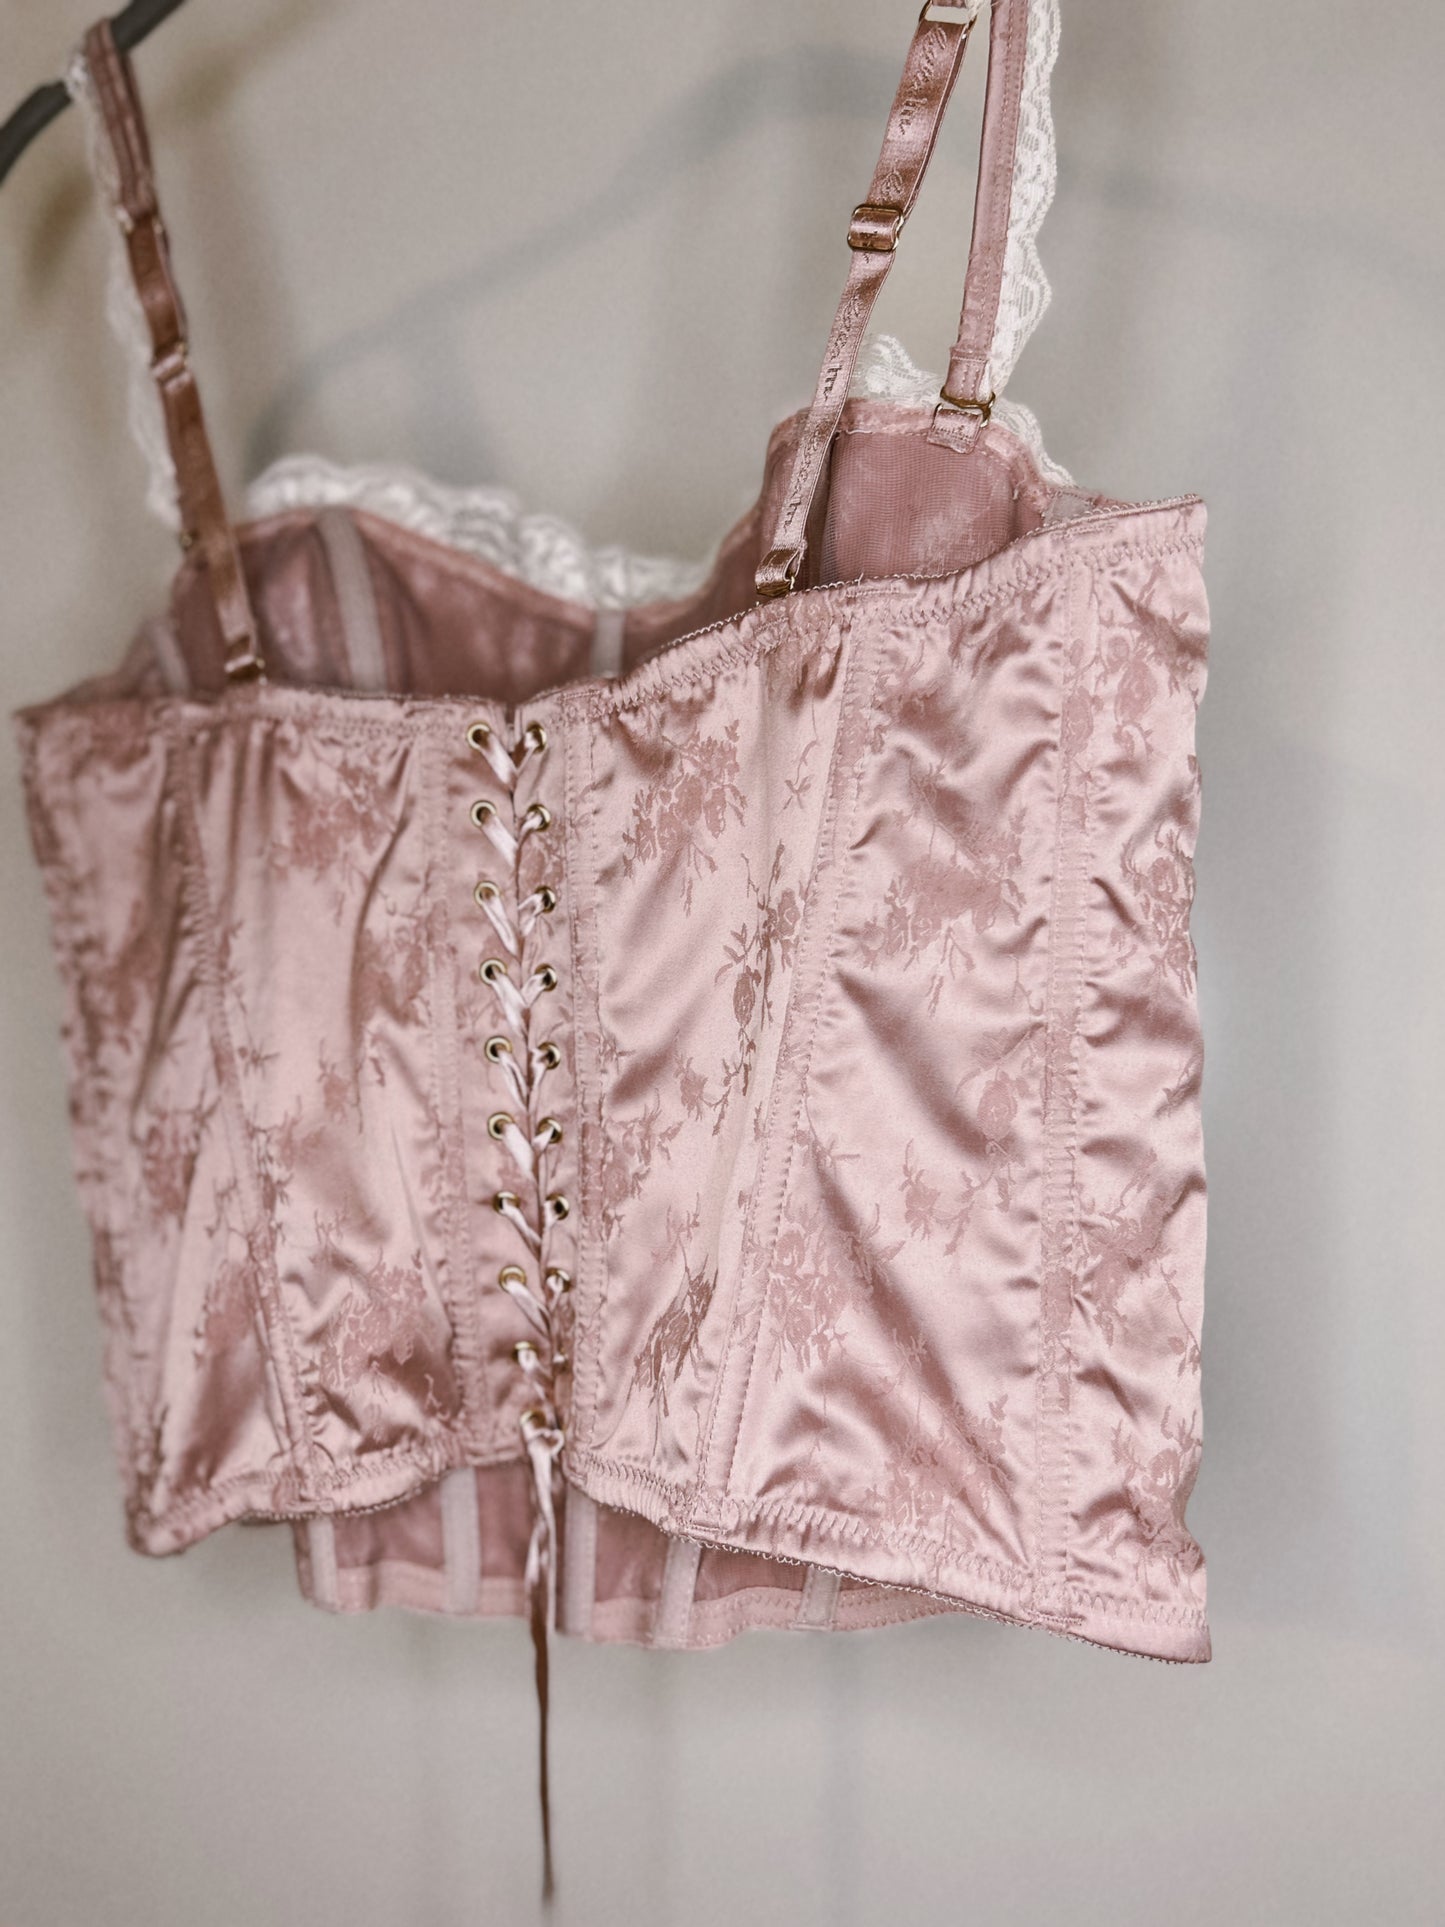 Vintage pink corset top